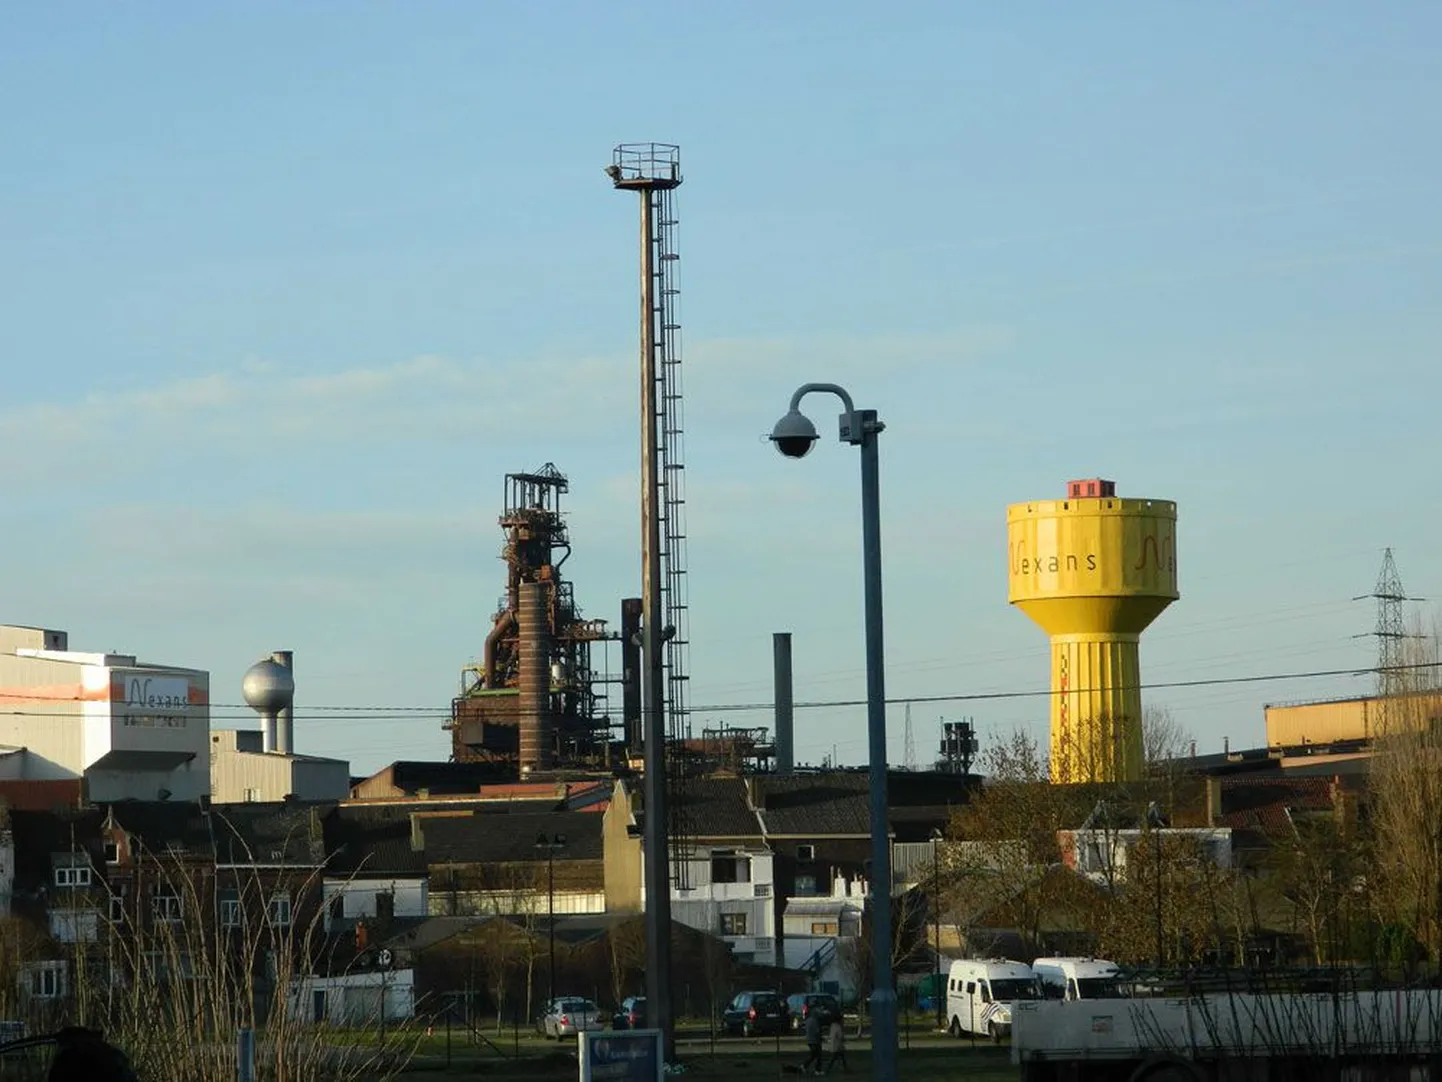 Tüüpiline Charleroi panoraam korstnate ja vabrikutega jätab trööstitu mulje.